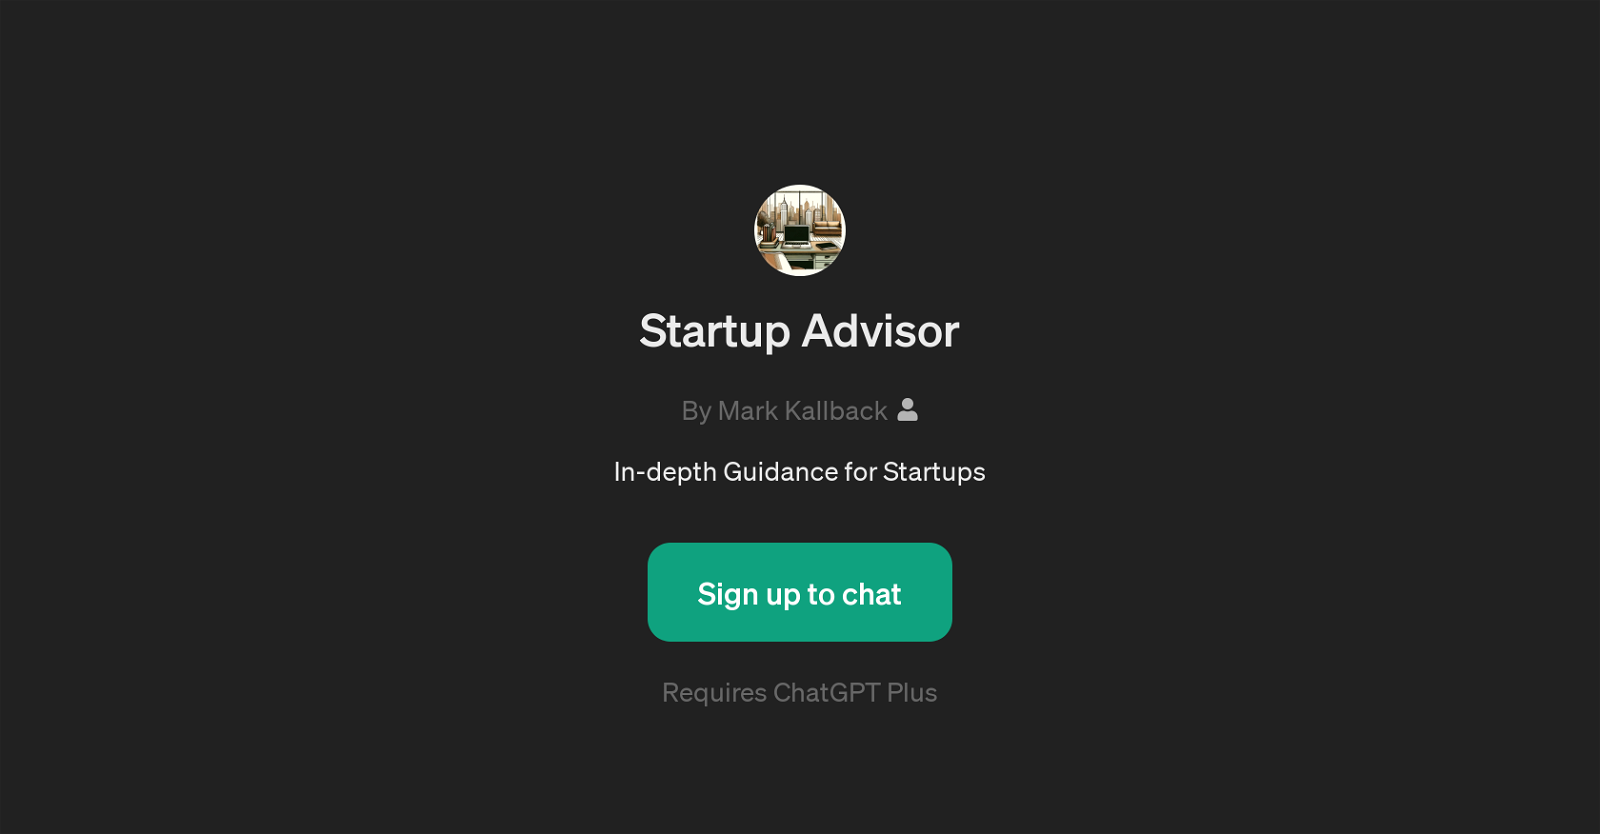 Startup Advisor website